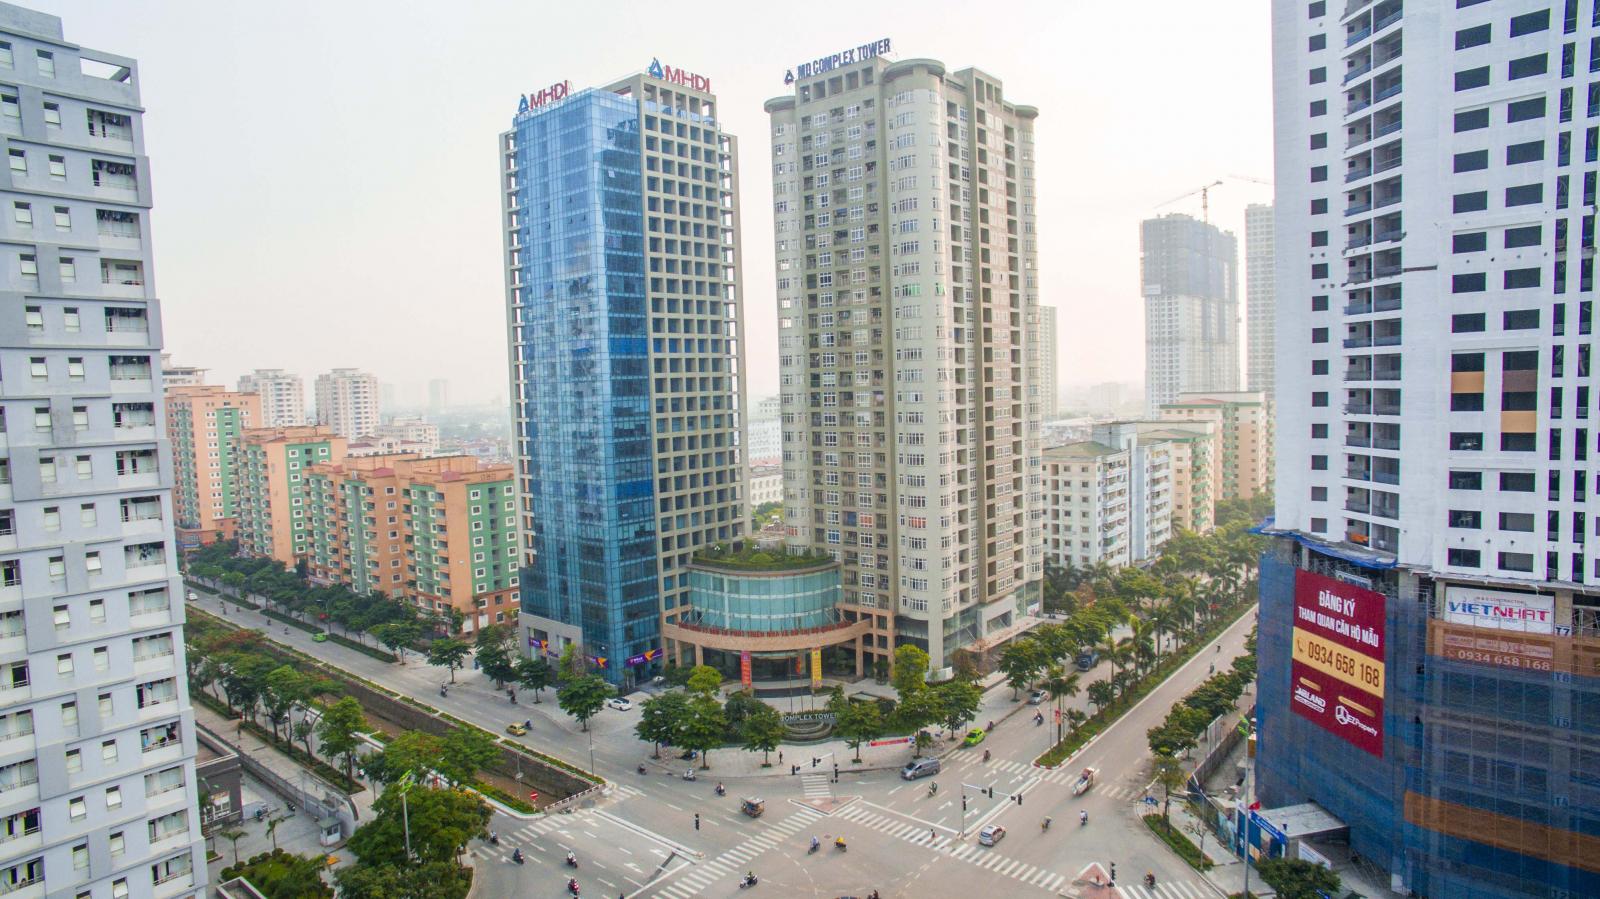 Dự Án Tòa Nhà Hỗn Hợp MD Complex Tower – Khu ĐTM Mỹ Đình 1, Từ Liêm, Hà Nội.